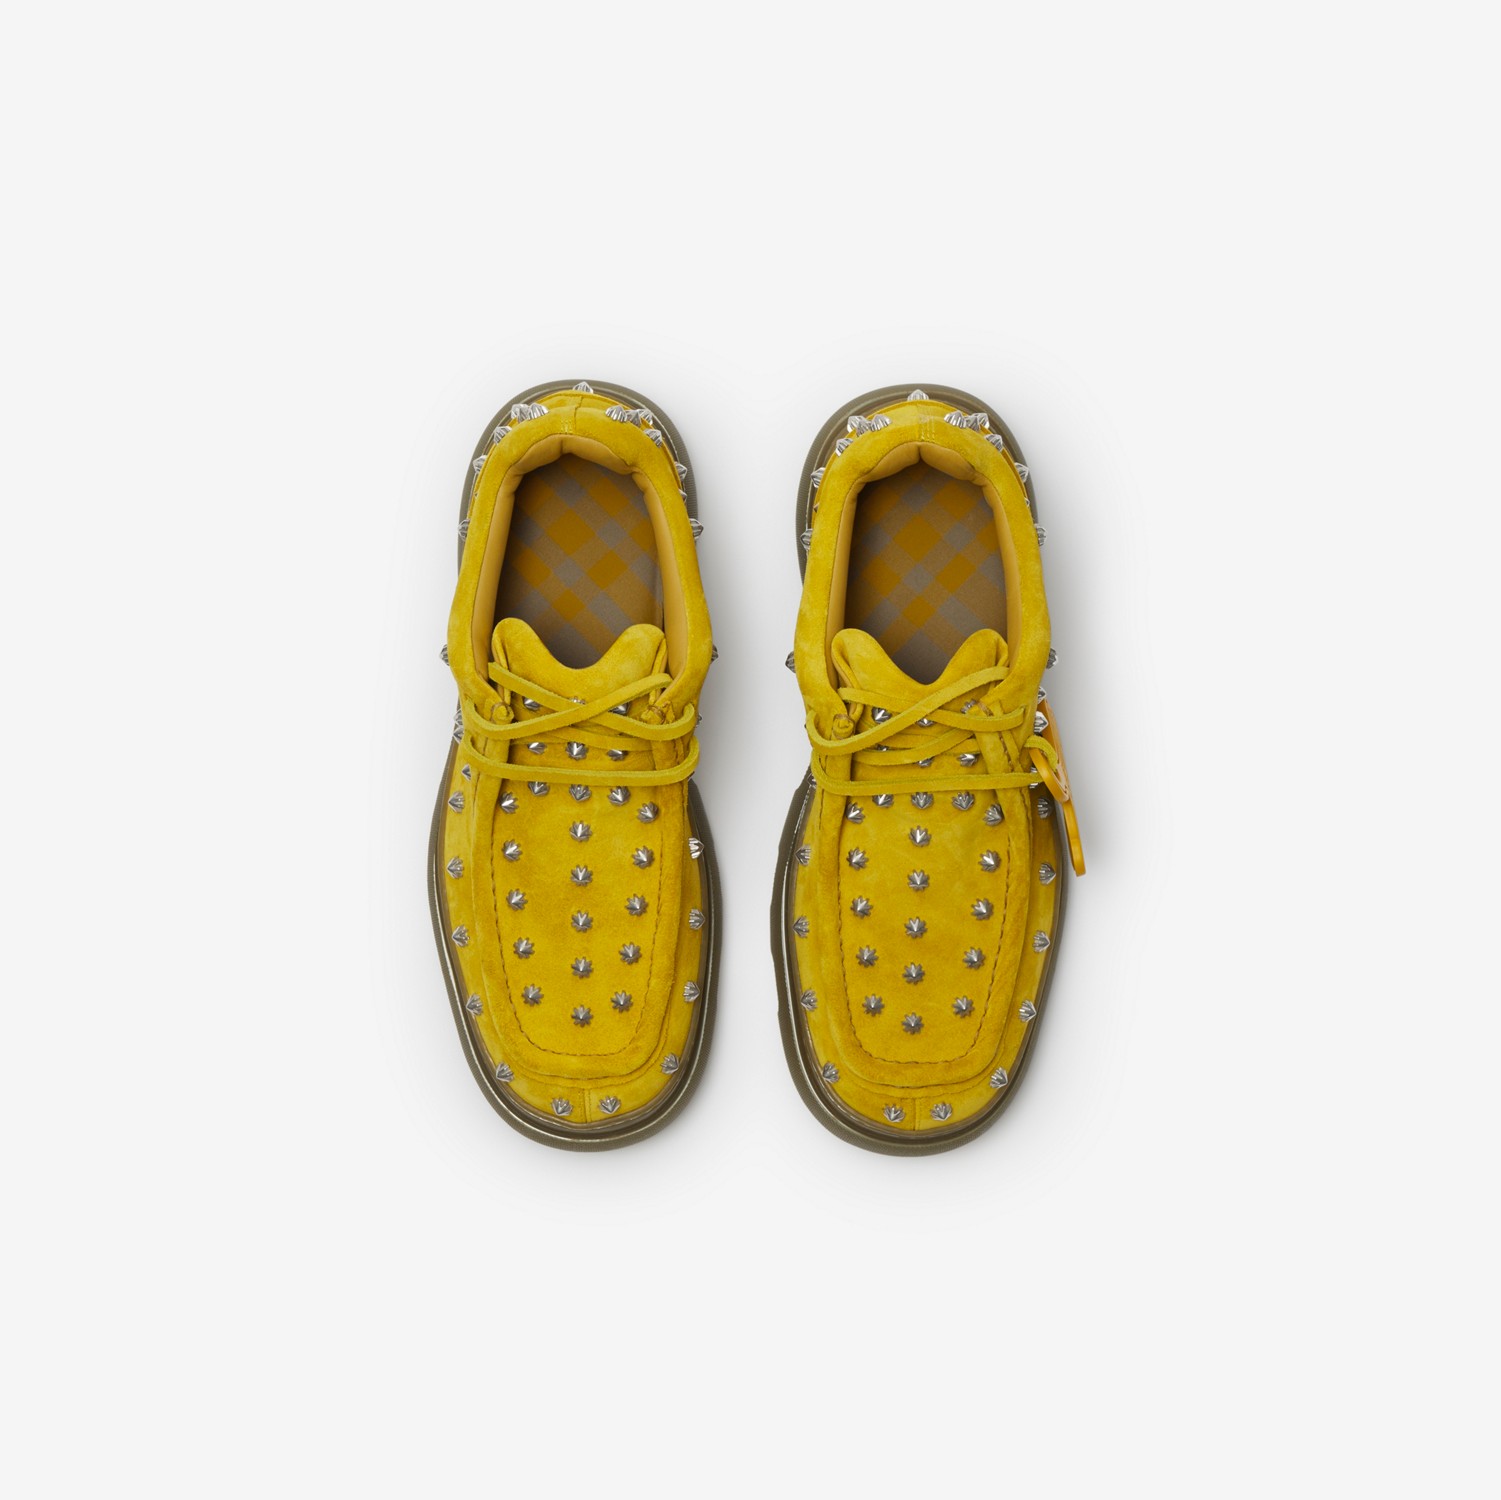 Sapatos Creeper de camurça cravejada (Manilla) - Homens | Burberry® oficial